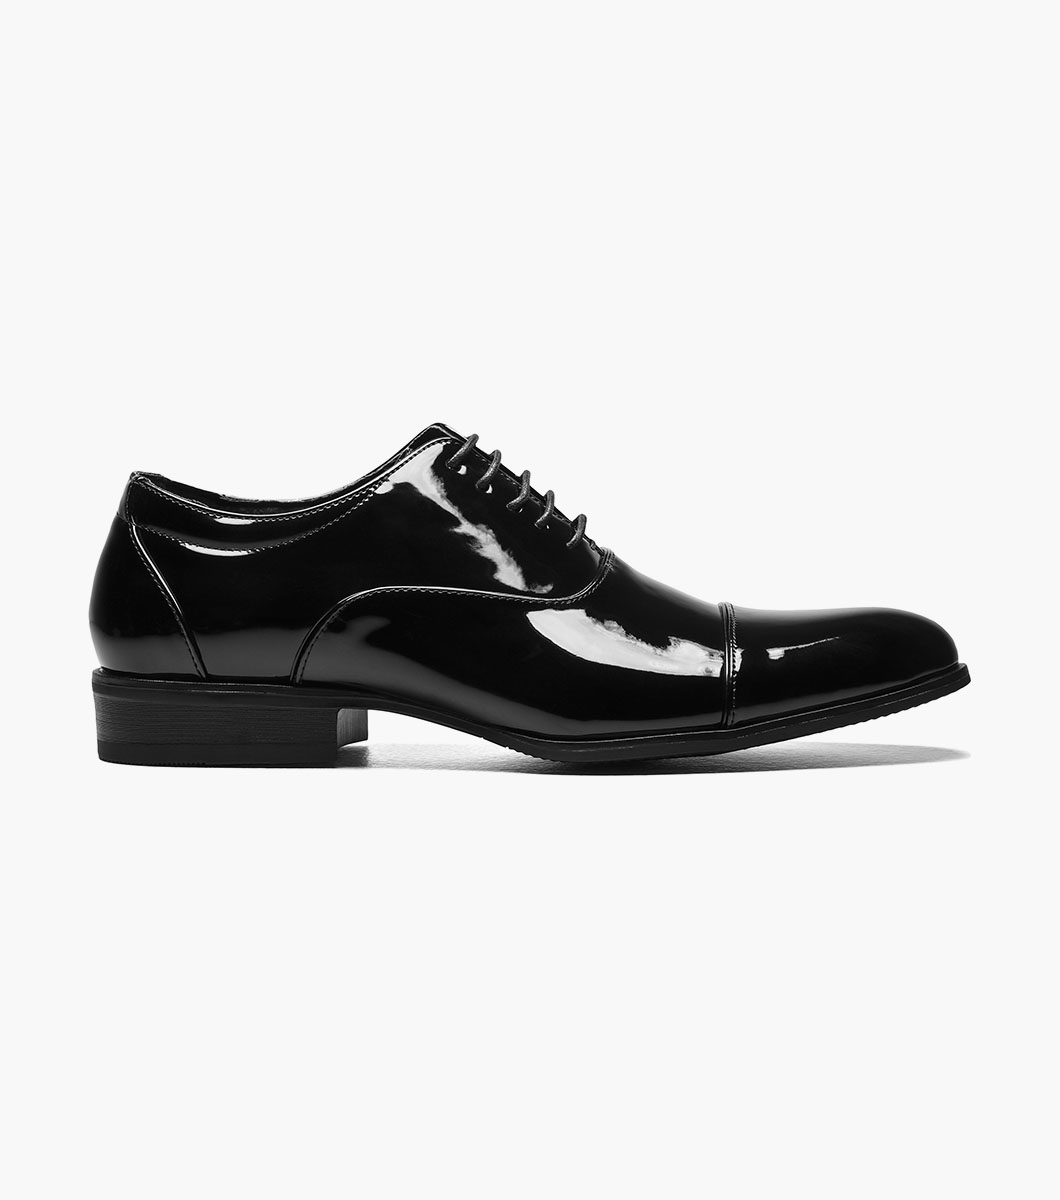 Gala Cap Toe Oxford Men’s Dress Shoes | Stacyadams.com